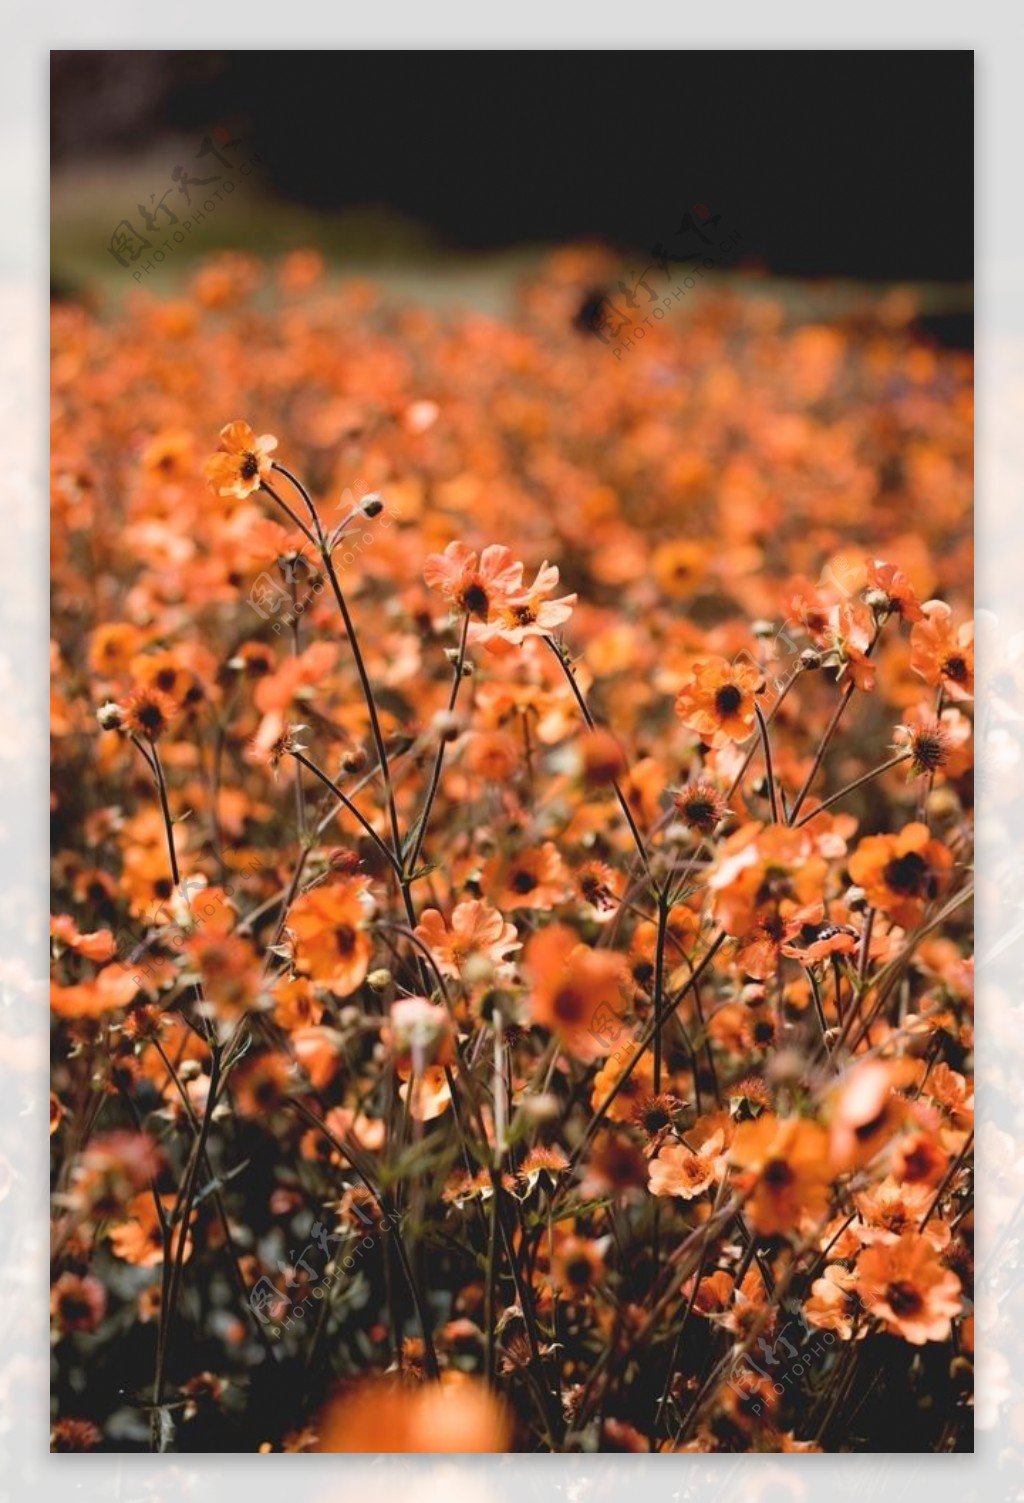 橙色花丛